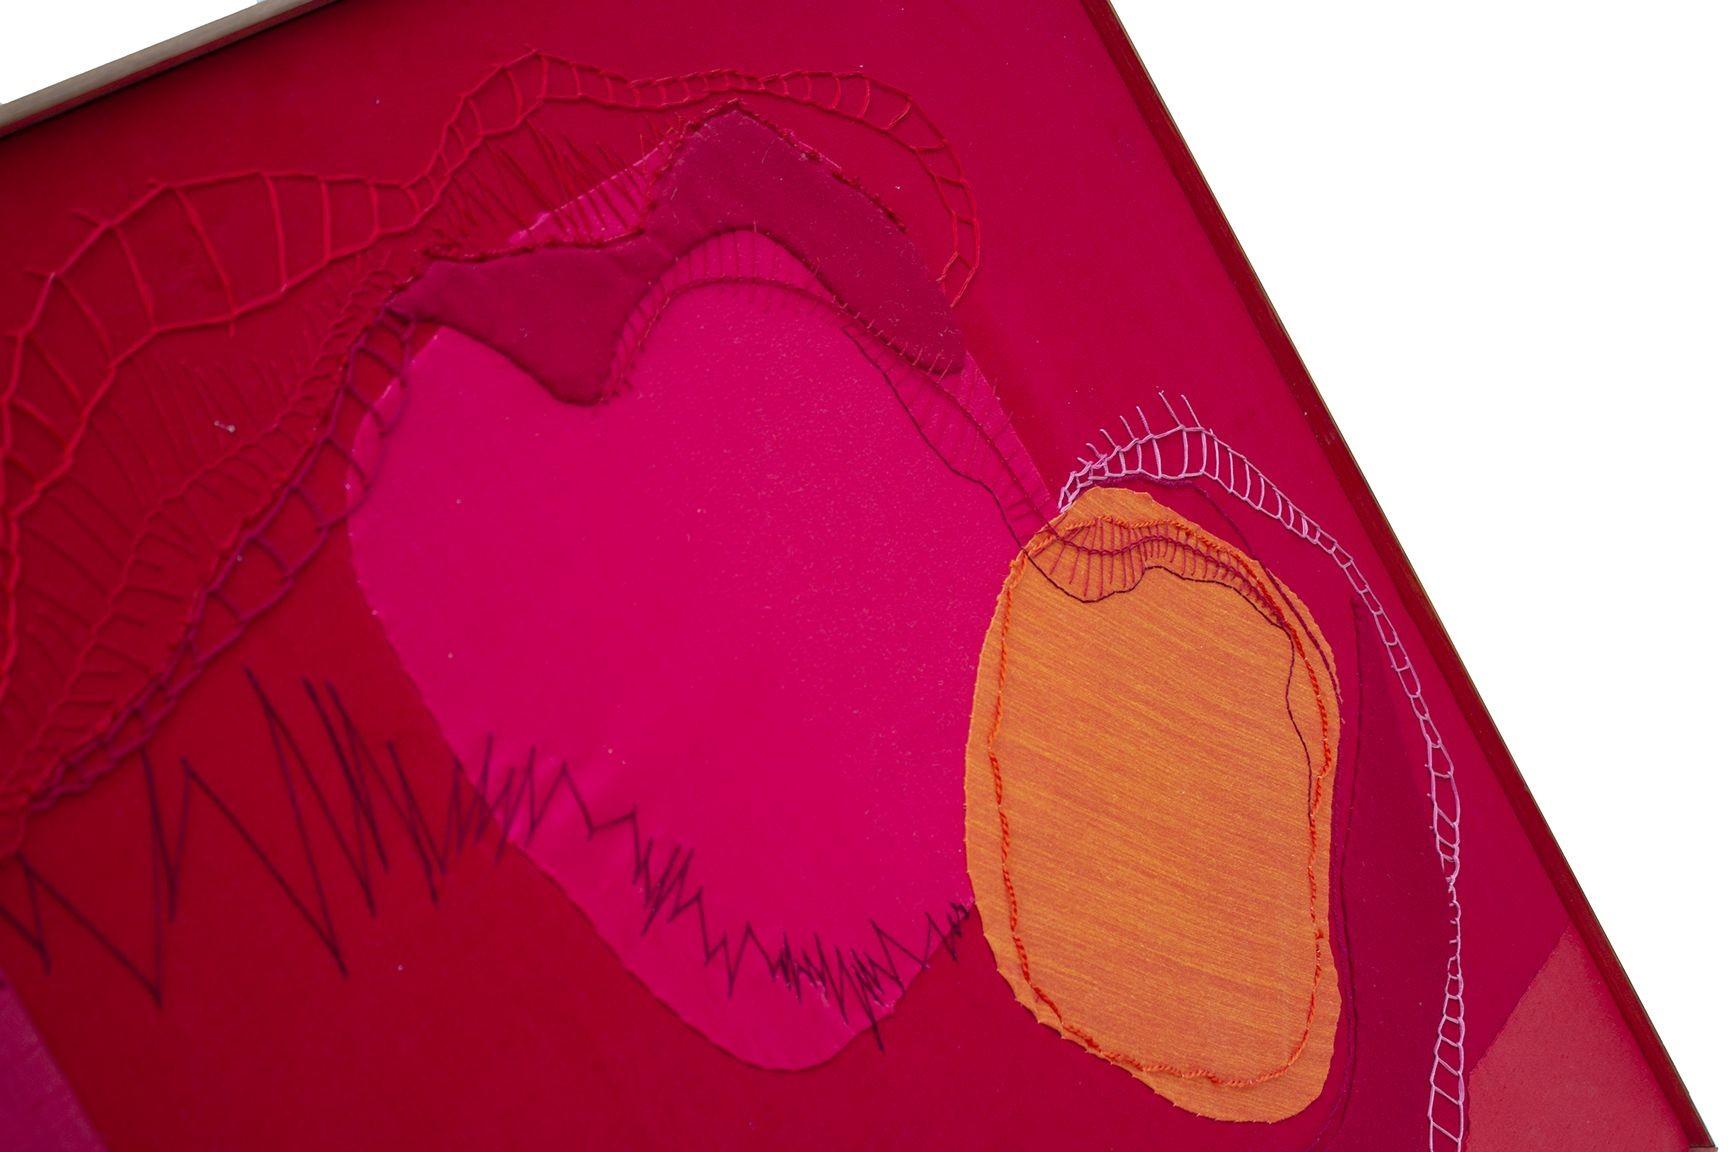 USA, 1970er Jahre
 
Textilkunst in leuchtenden Juwelentönen von Fuchsia, Rot und Mandarine mit verschiedenen Nähten und Materialien von glattem Stoff bis zu reichem Samt. Der Rahmen ist aus Holz und die Innenkanten sind in passendem Rot gefärbt.